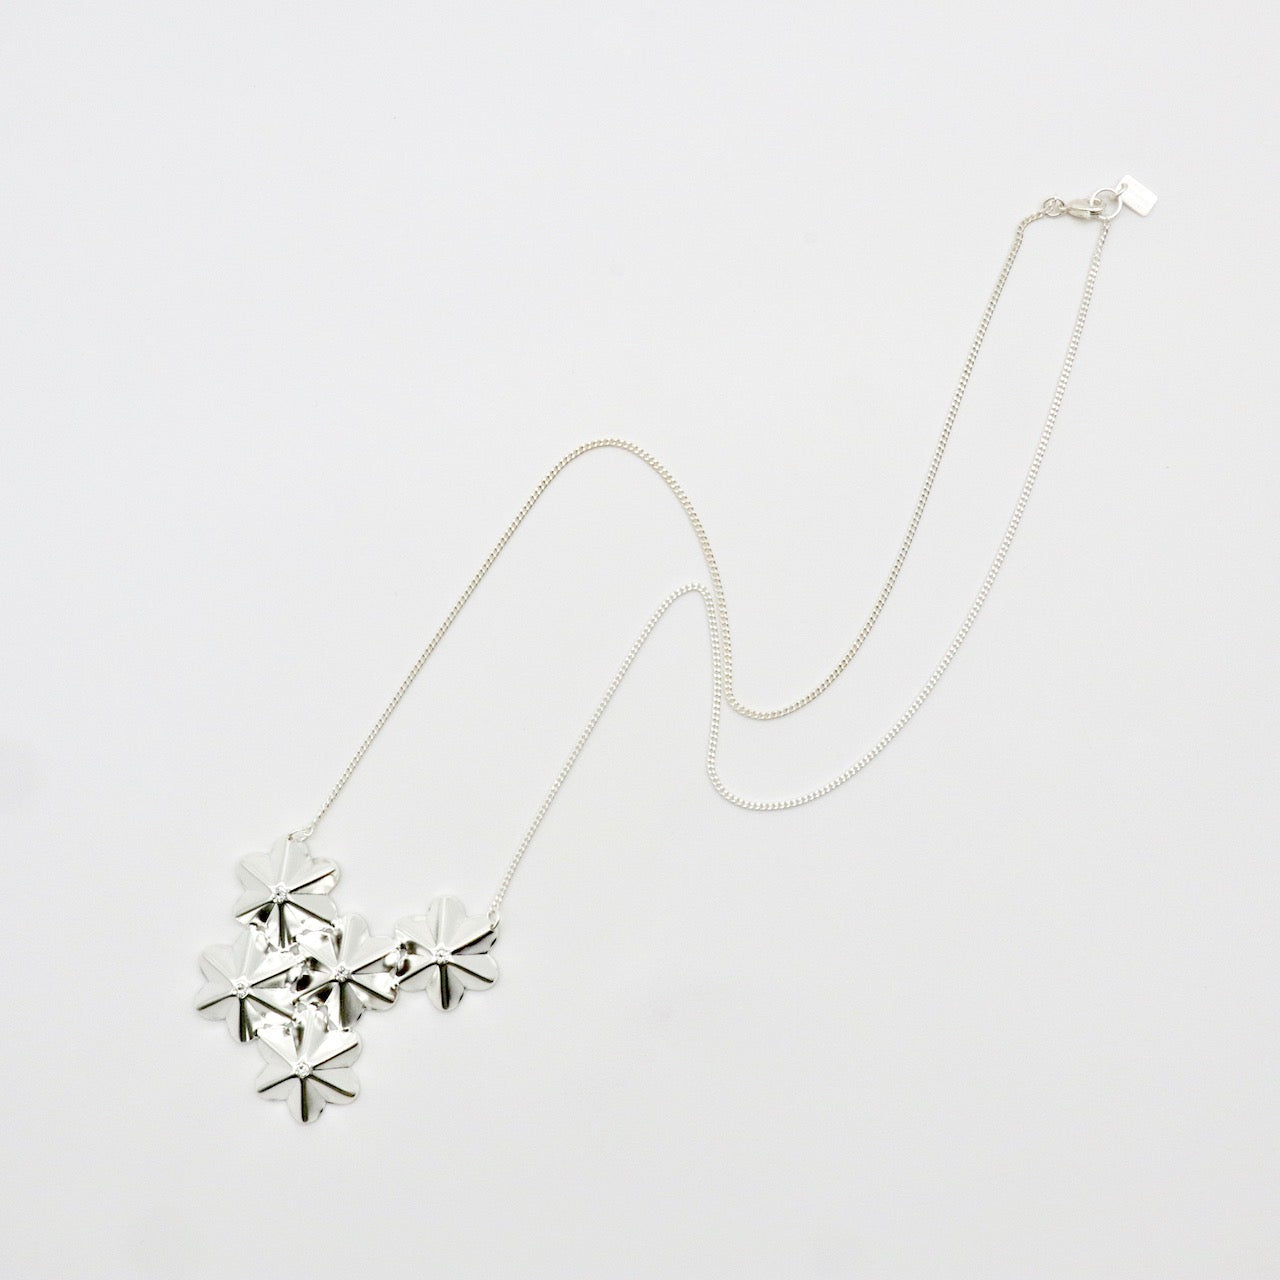 【Les Balanes】Long Necklace